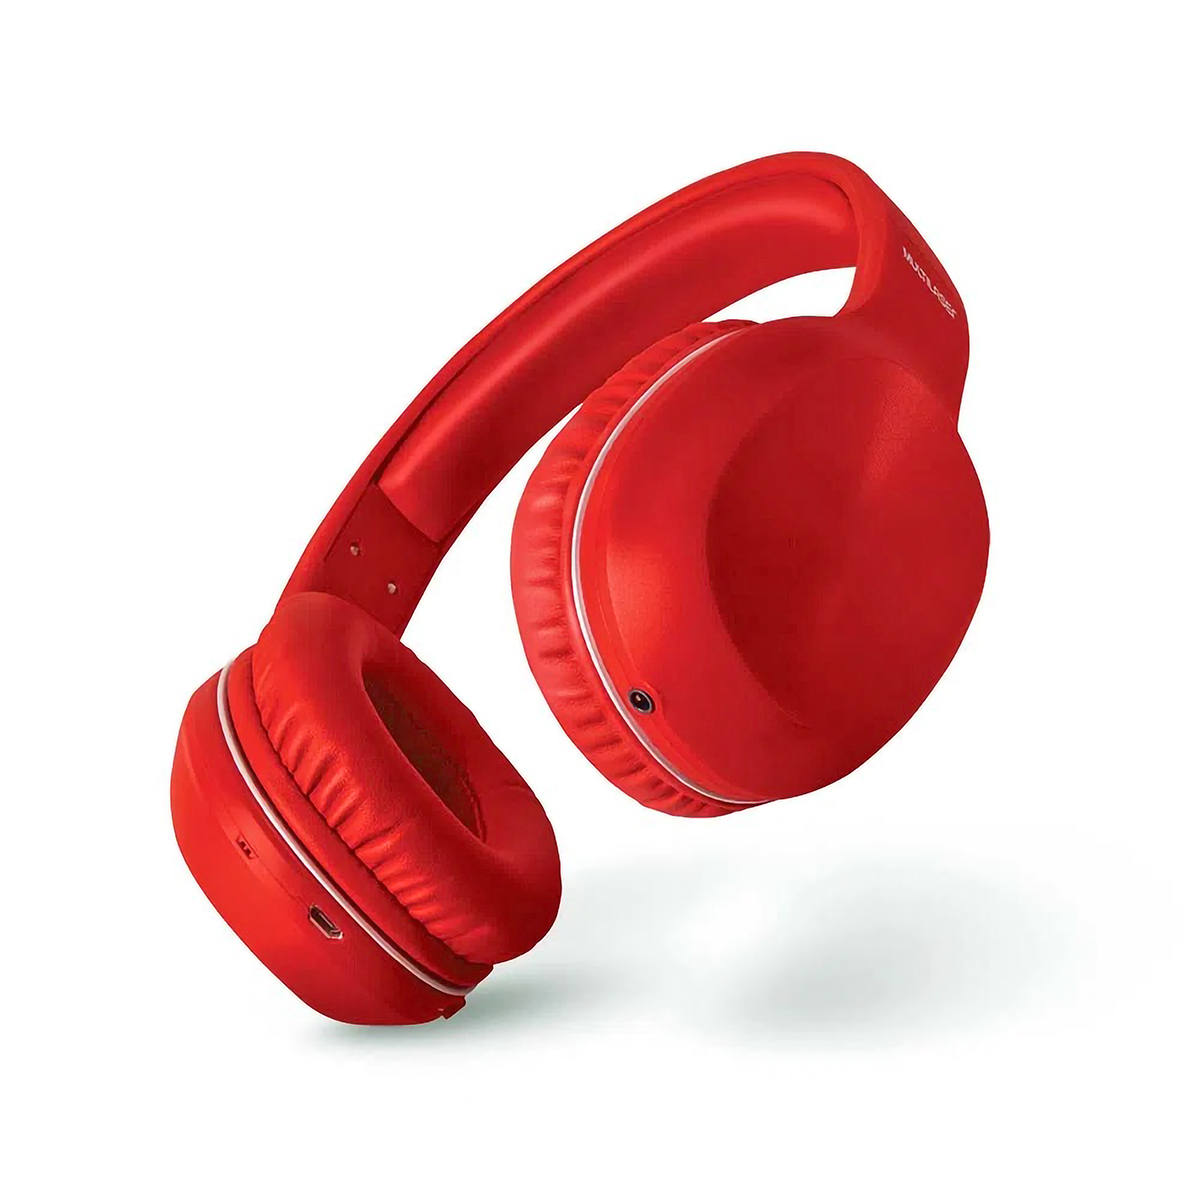 Fone de Ouvido Pop Bluetooth com Microfone Hands Free Earpads Extra Macios Acolchoados Multilaser PH248 Vermelho